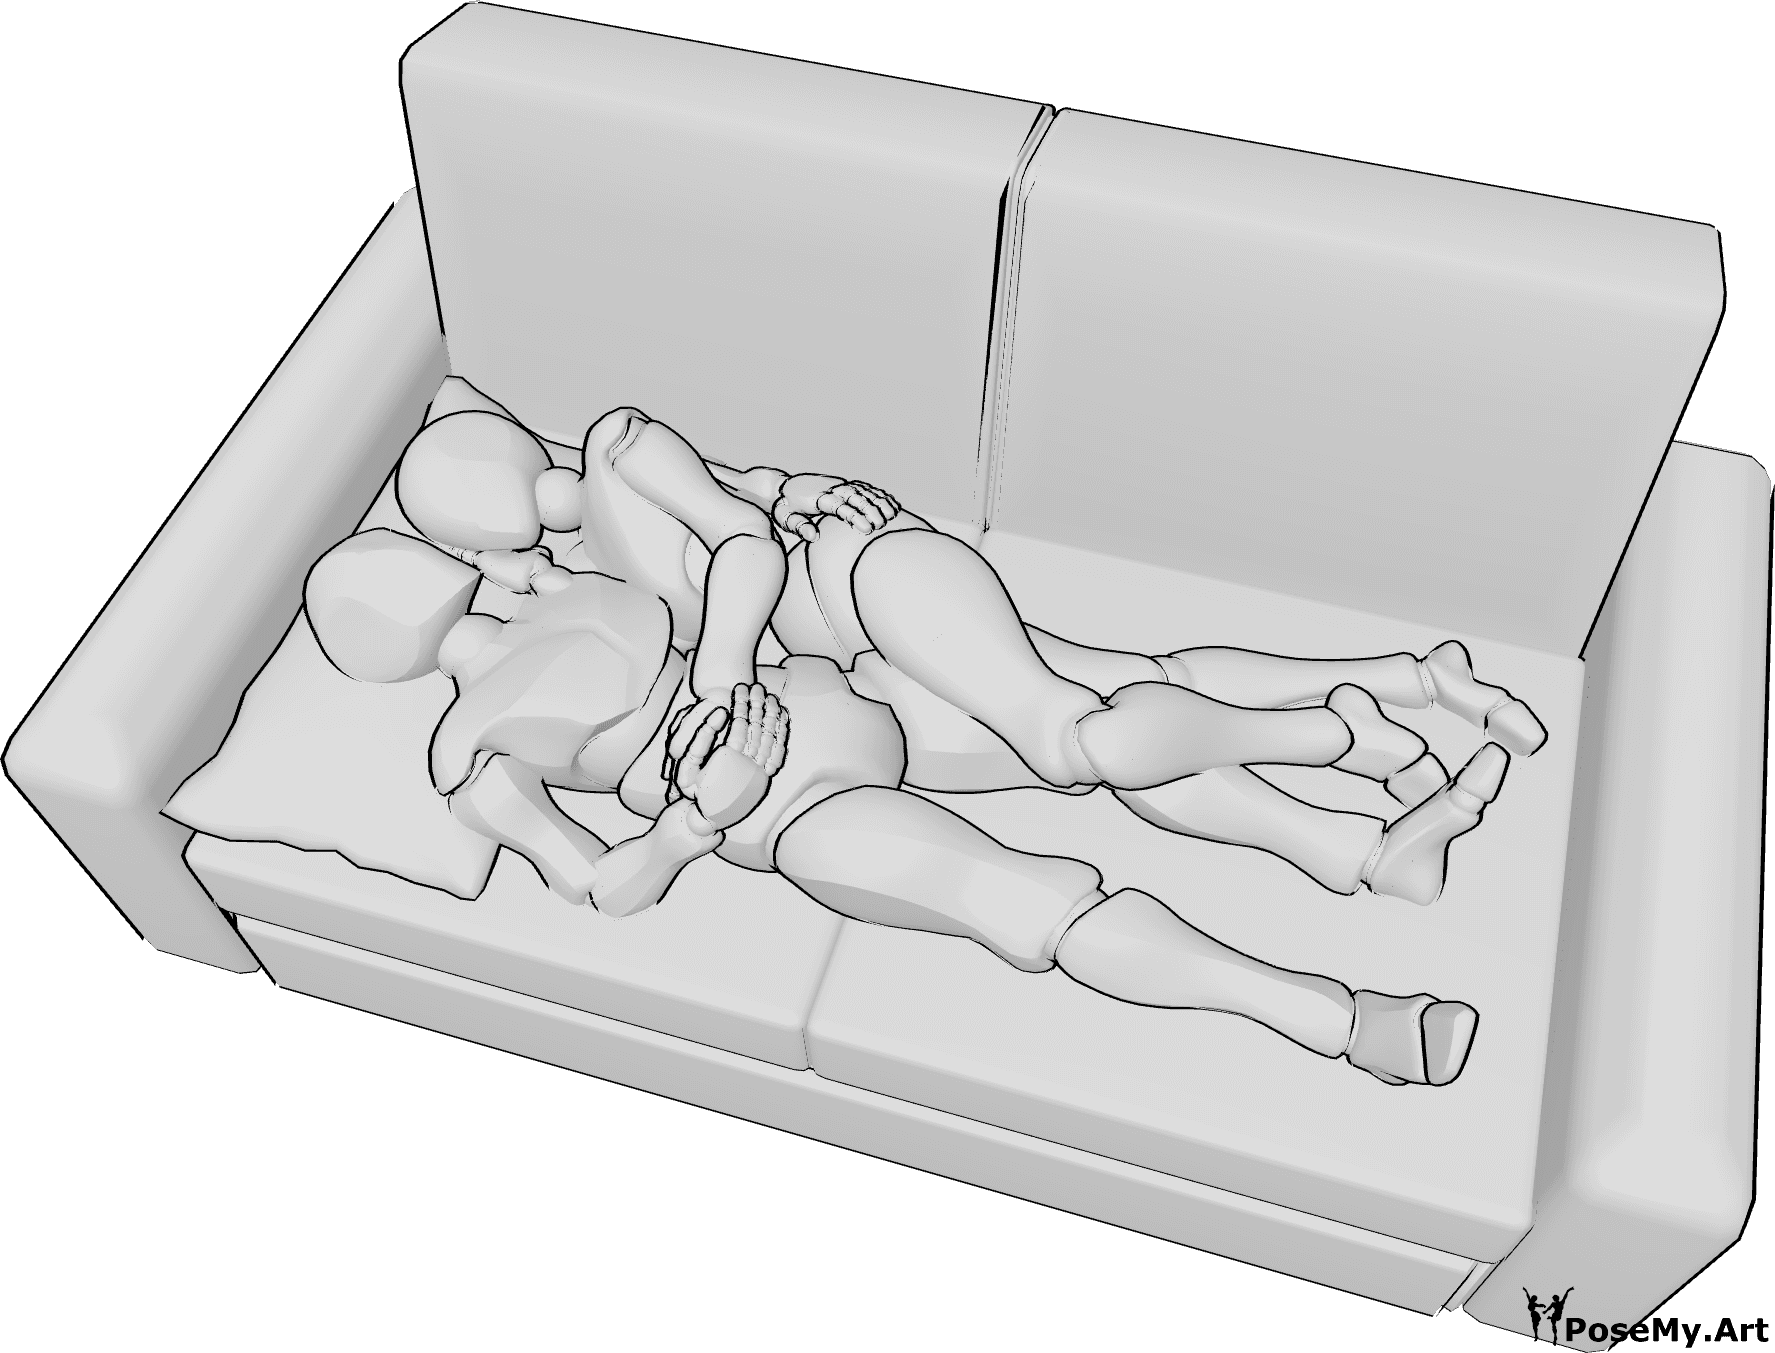 Referência de poses- Pose de deitar e acariciar - A mulher e o homem estão deitados no sofá e abraçam-se um ao outro